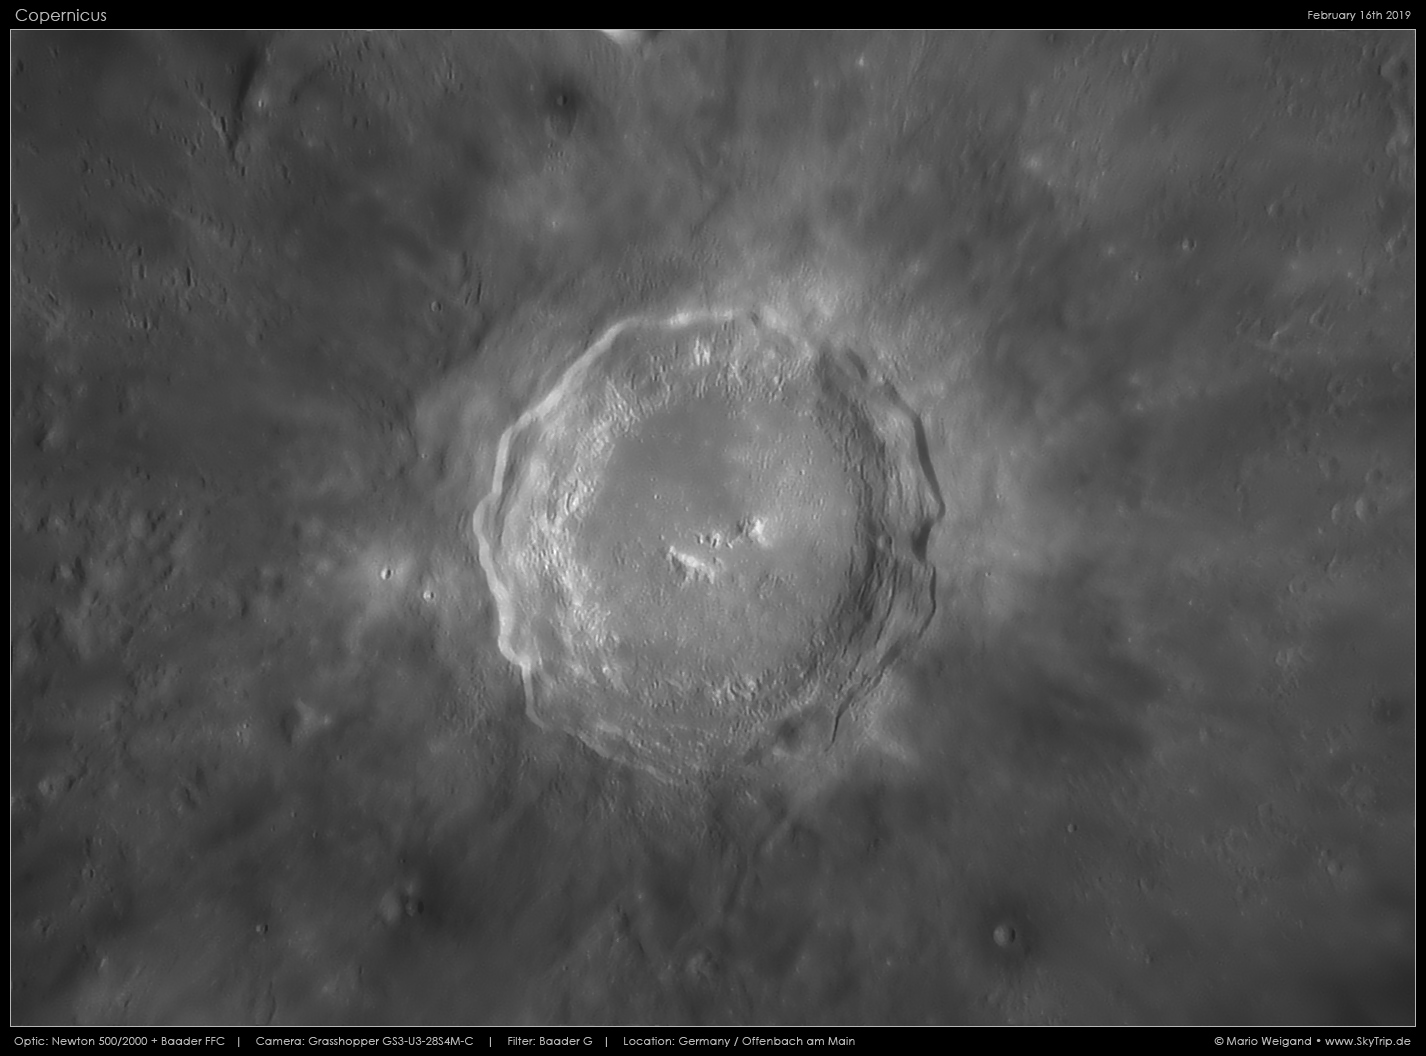 Mondkrater Kopernikus